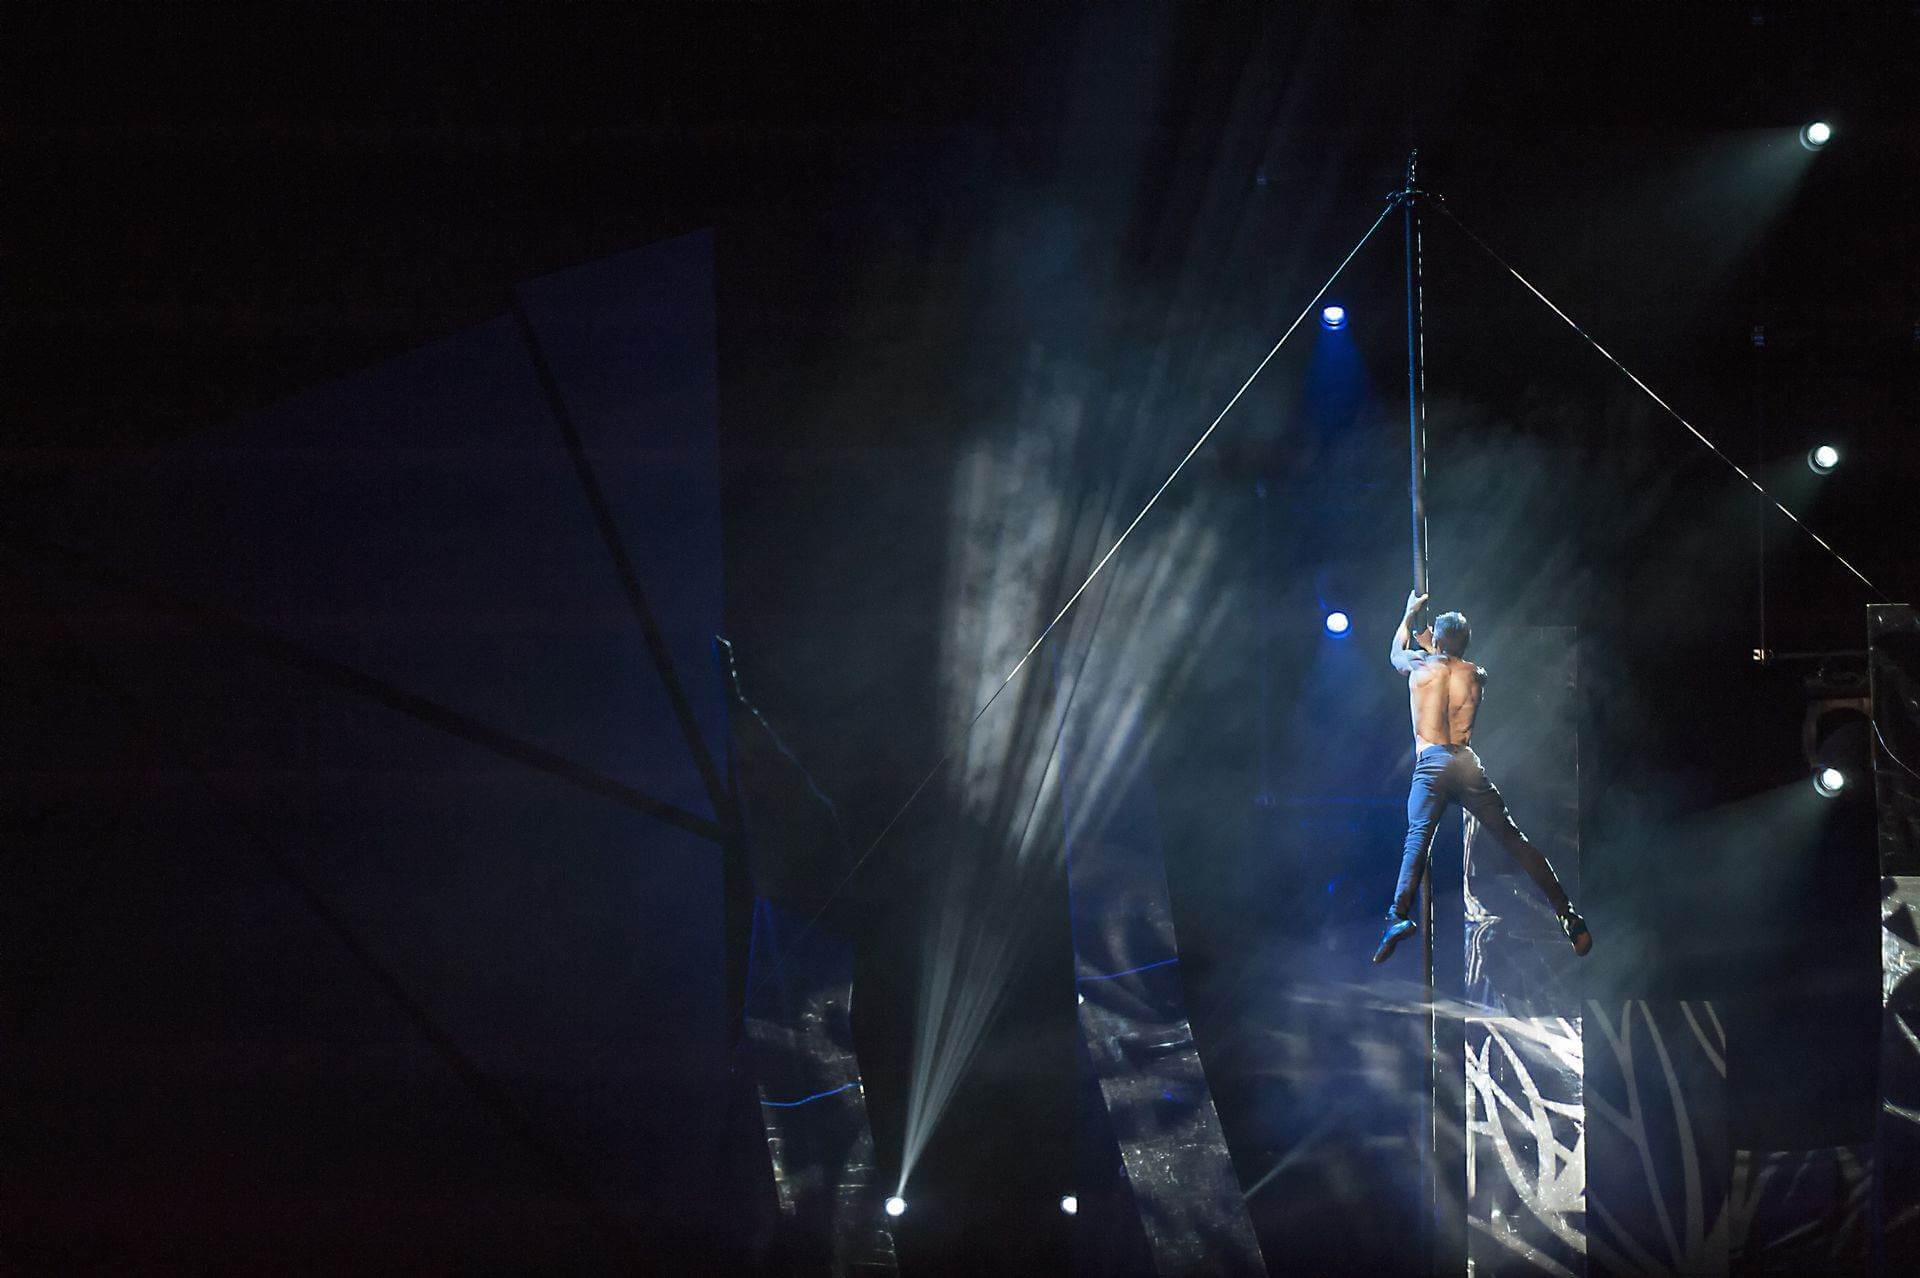 Scalada - Vision by Cirque du Soleil 2016: Barra vertical con acrobacias